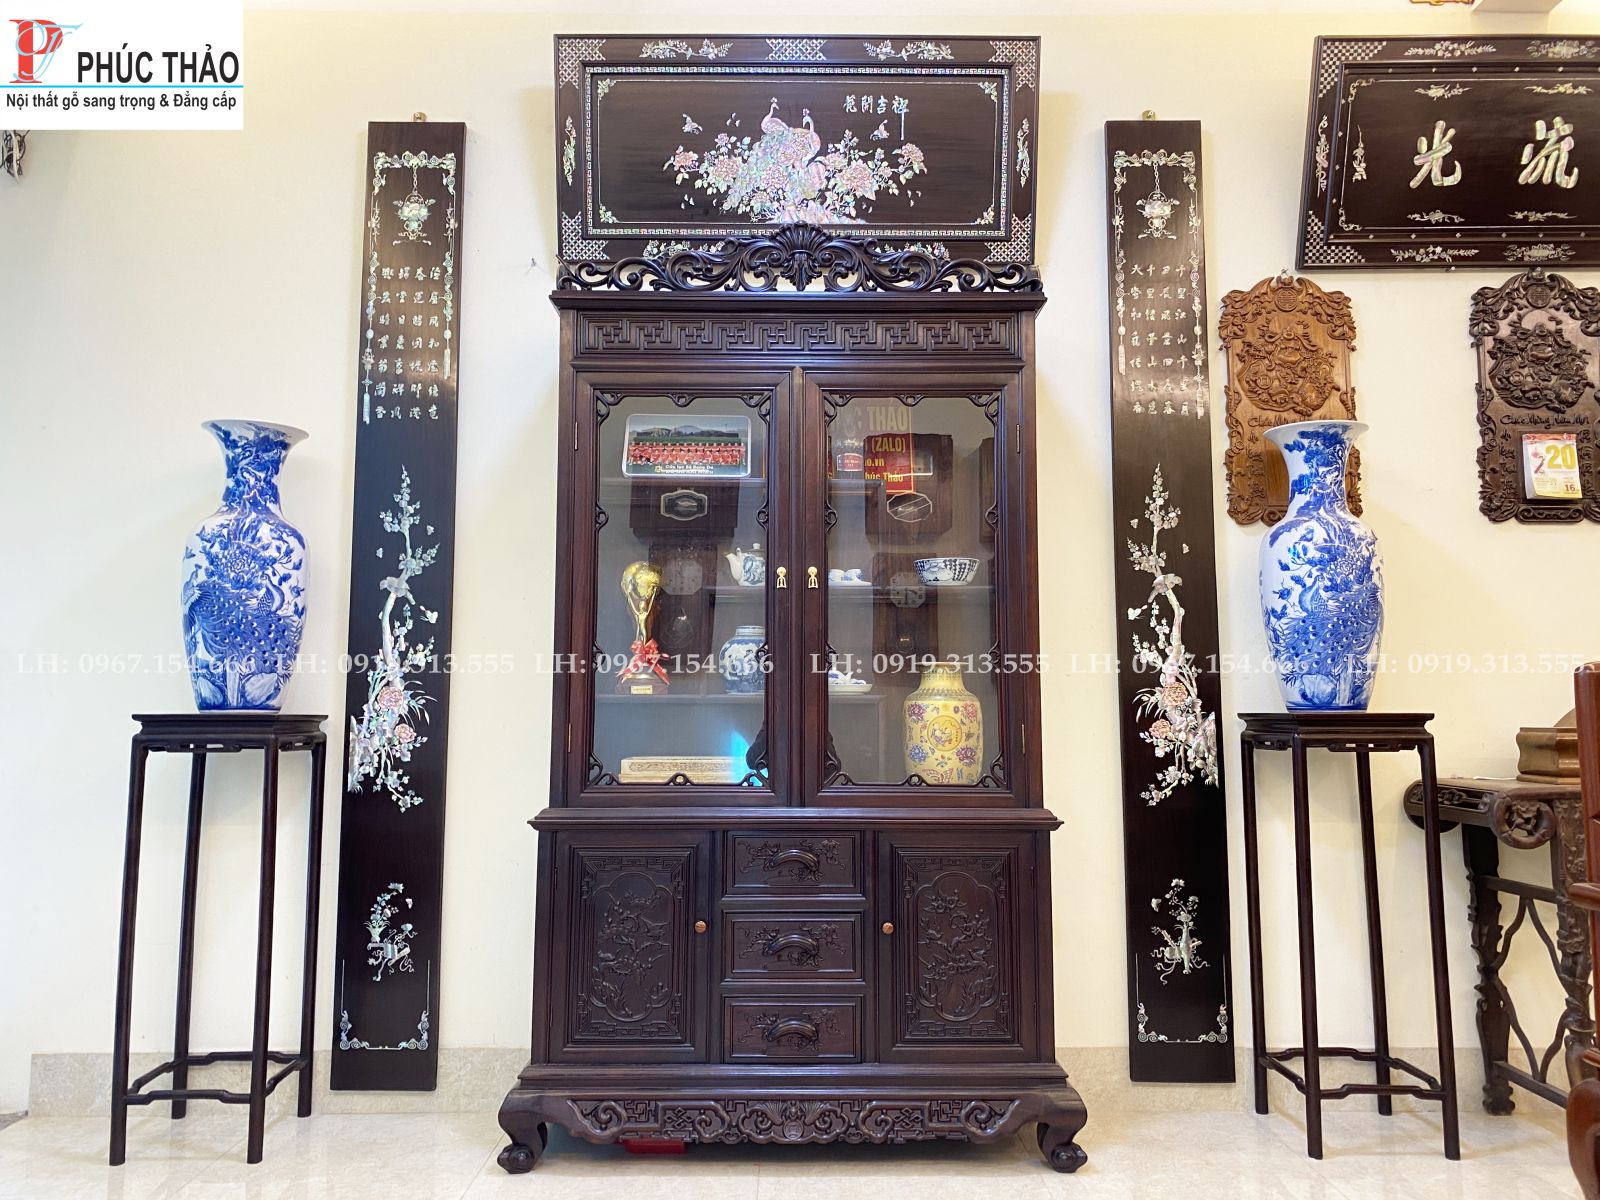 Phucthao.vn cơ sở bán tủ trưng bày đồ gốm sứ đẹp tại Hải Phòng